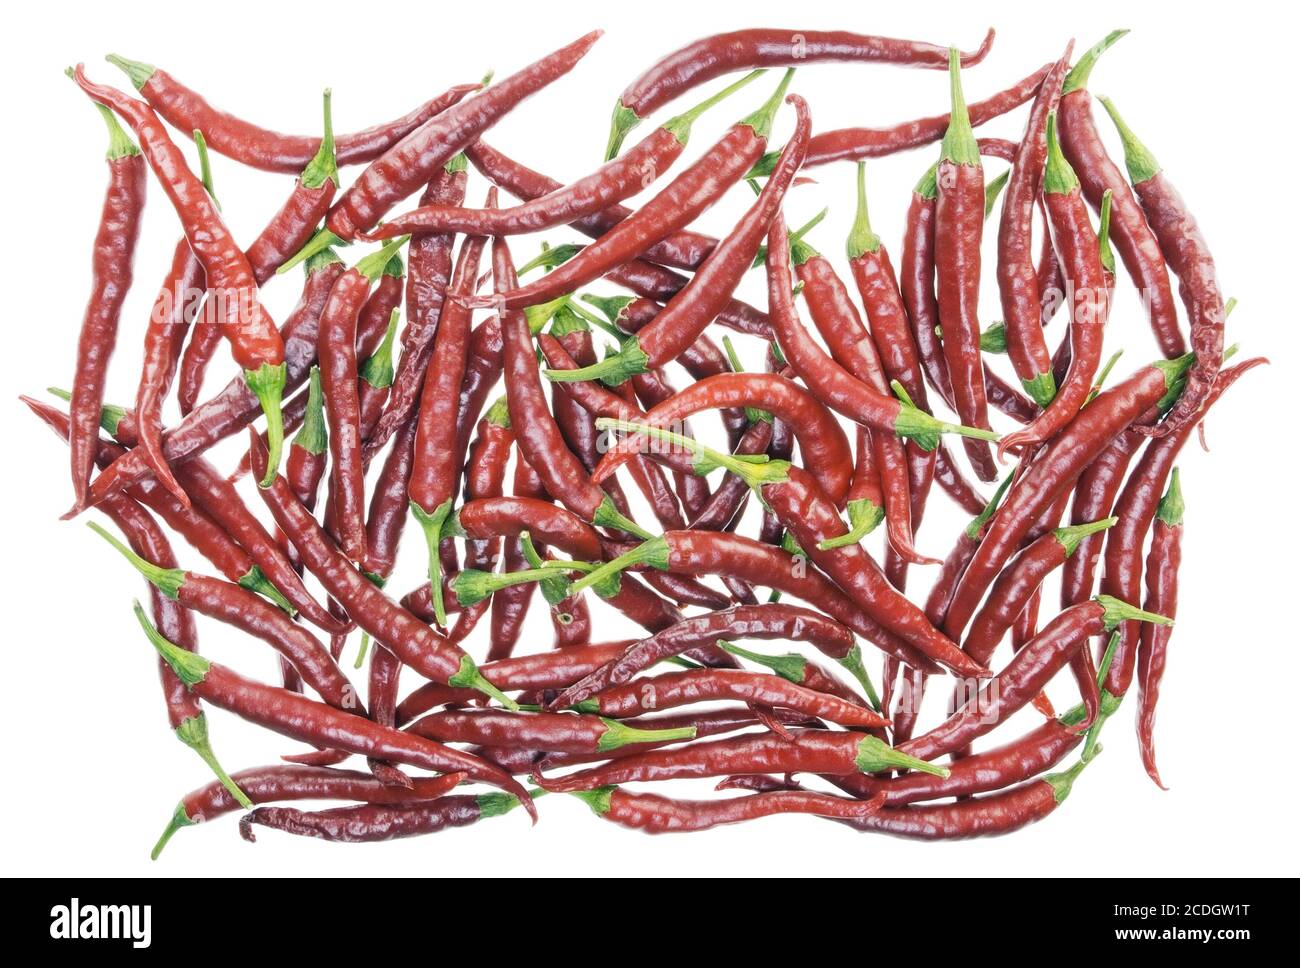 Lotto di peperoni rossi caldi isolati Foto Stock